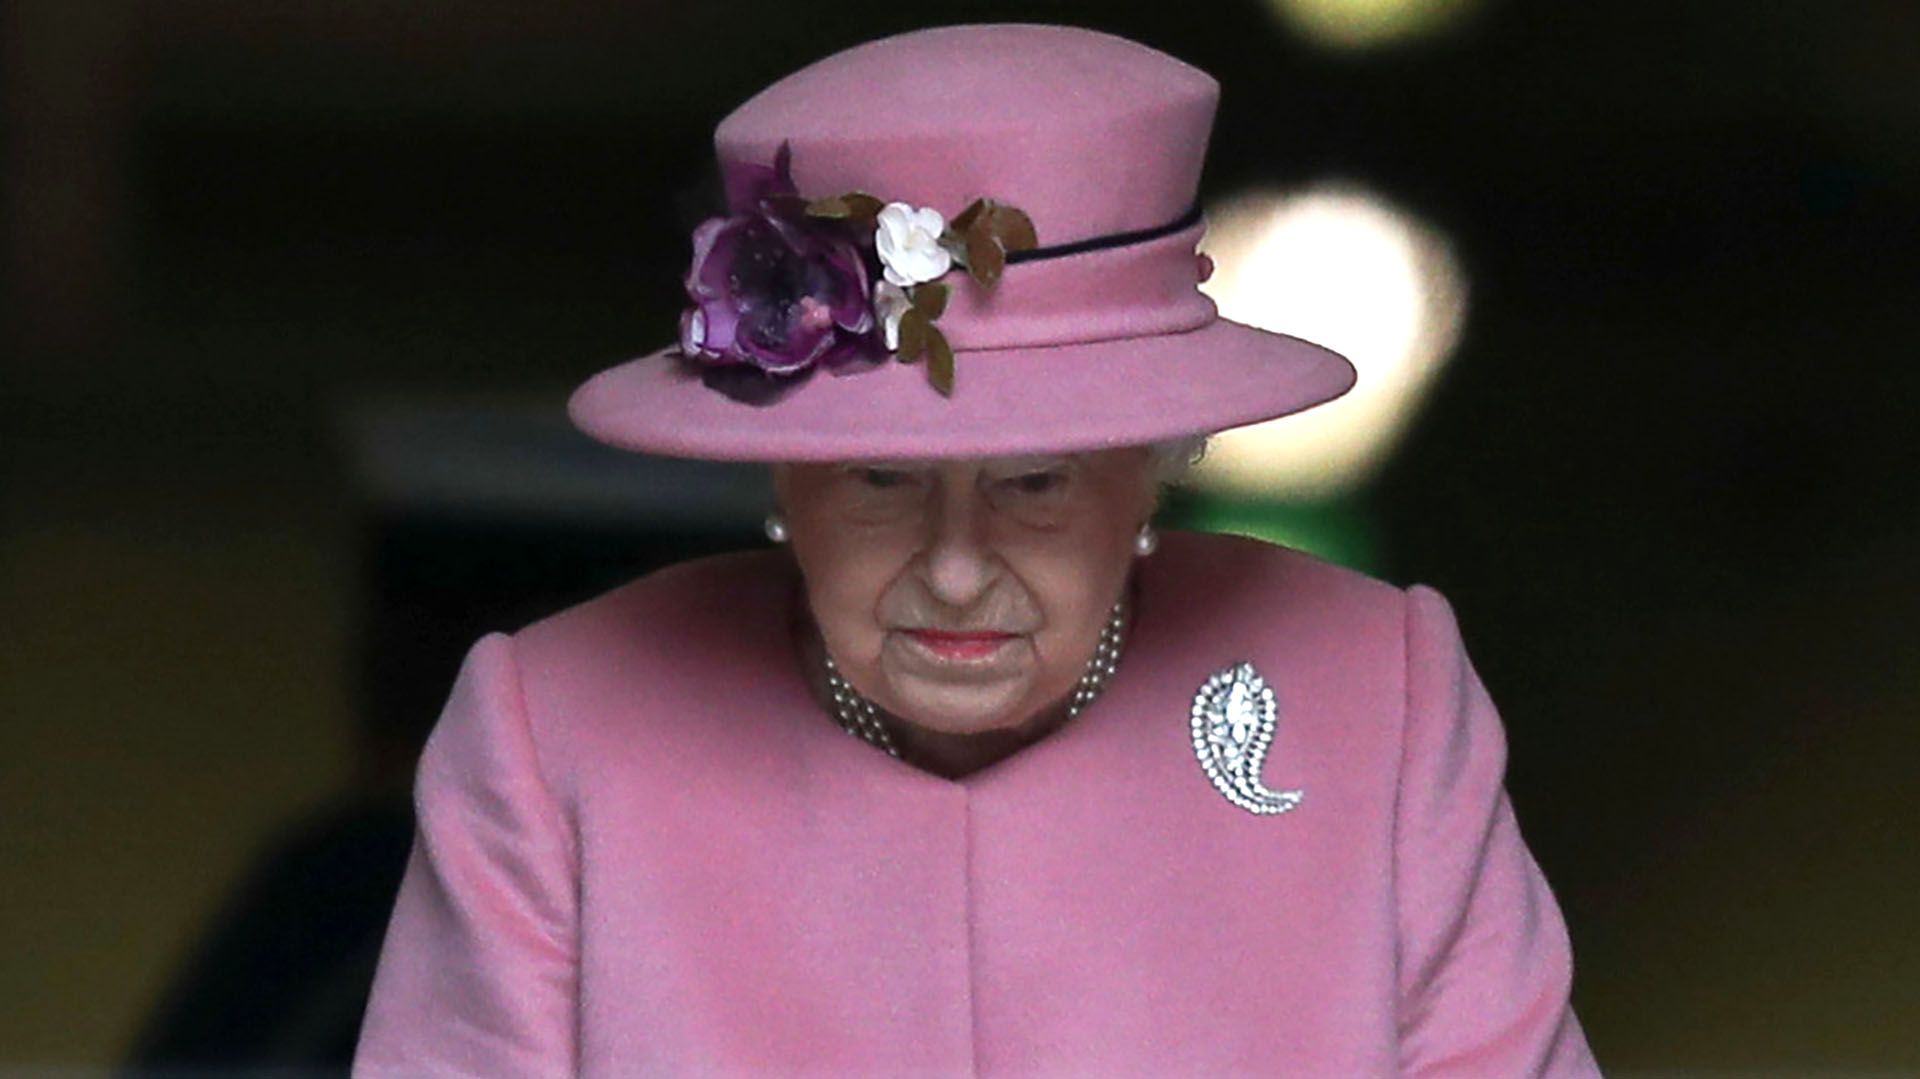 La reina Isabel II tiene un gran placer por el pastel de choloate, aunque cuida mucho las porciones que consume y así tener una buena dieta (Foto: Reuters)